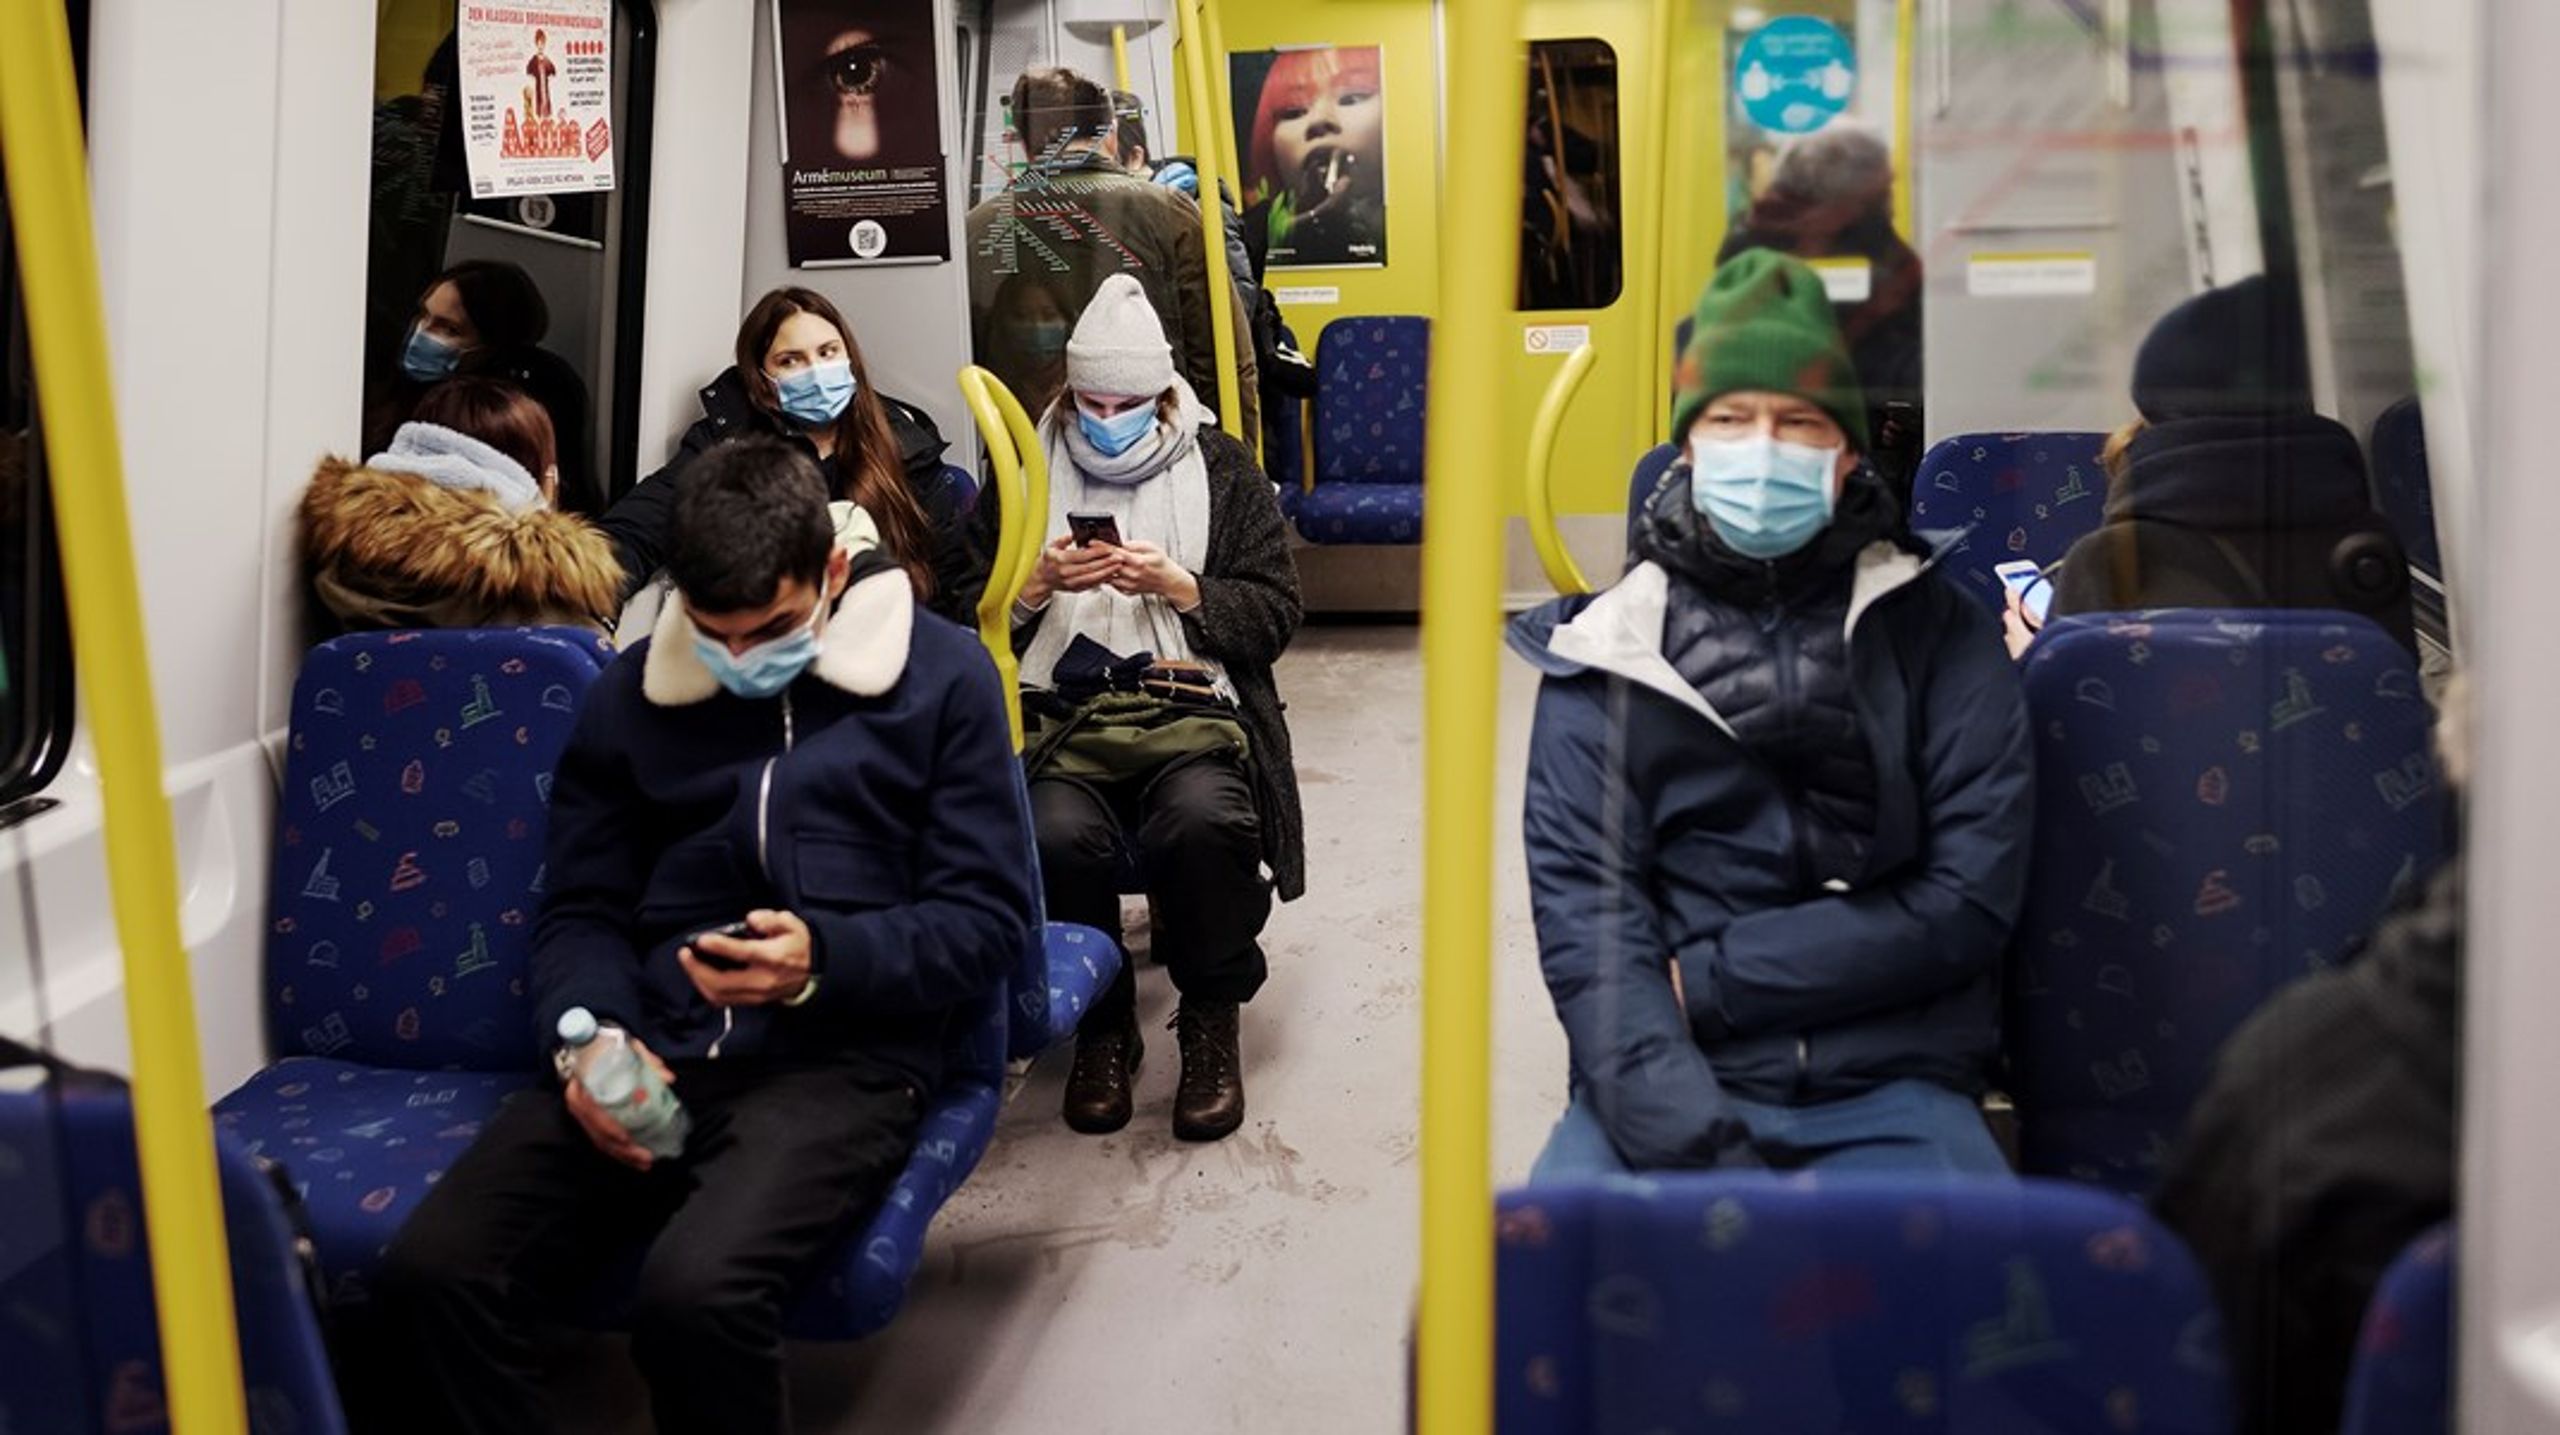 Nu väller fjärde vågen av covid-19 över Sverige och våren kommer troligen fortsätta att präglas av krav på munskydd i kollektivtrafiken, avstånd och arbete hemifrån.